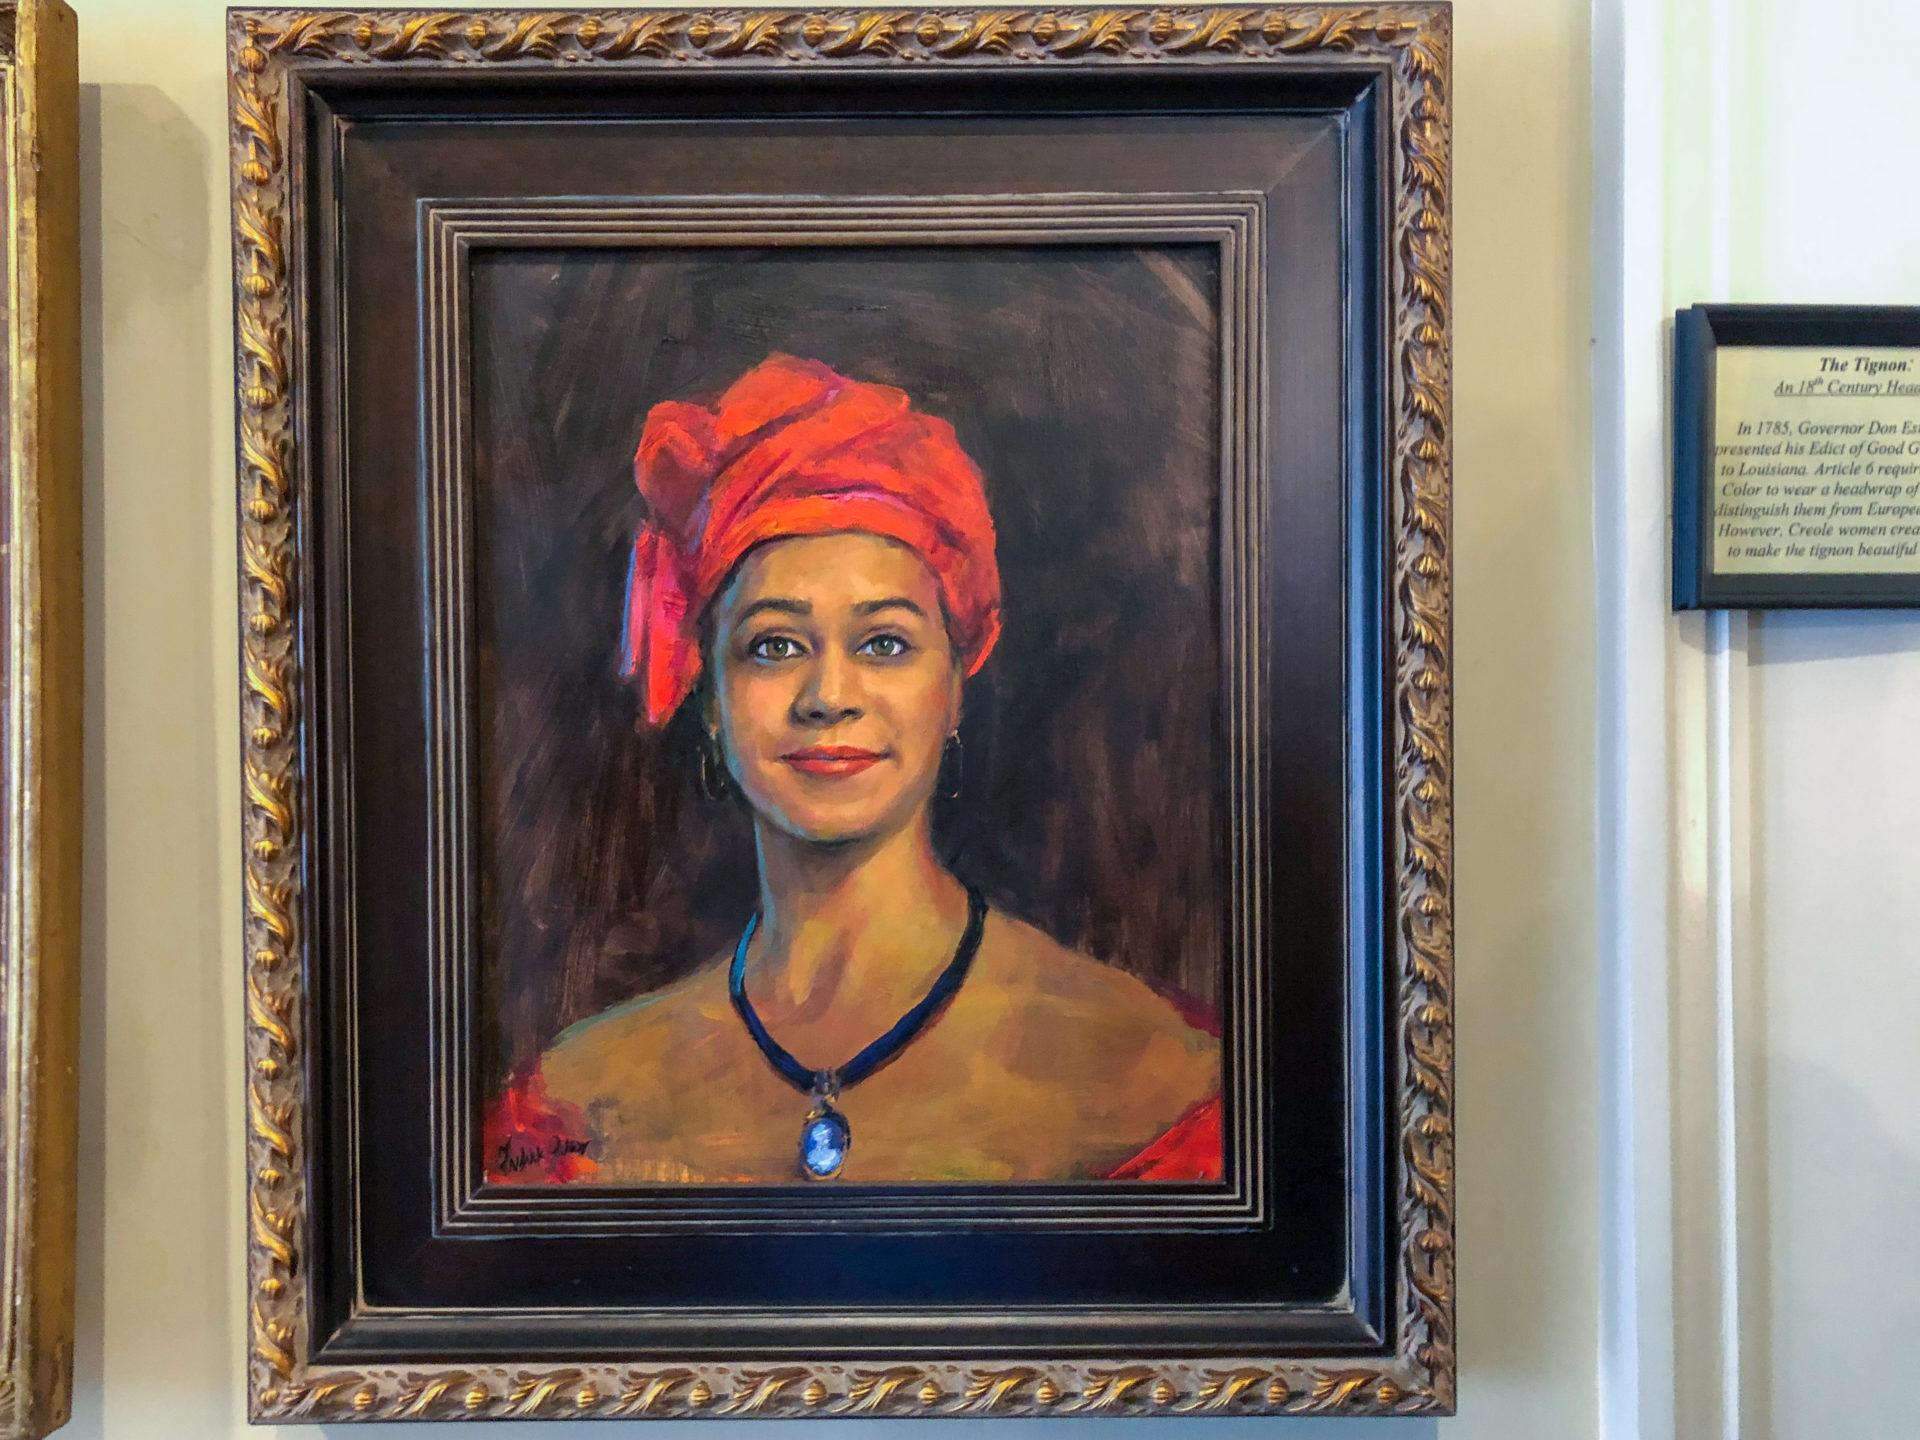 Der Tignon ist Erkennungszeichen der Free Women of Color in New Orleans